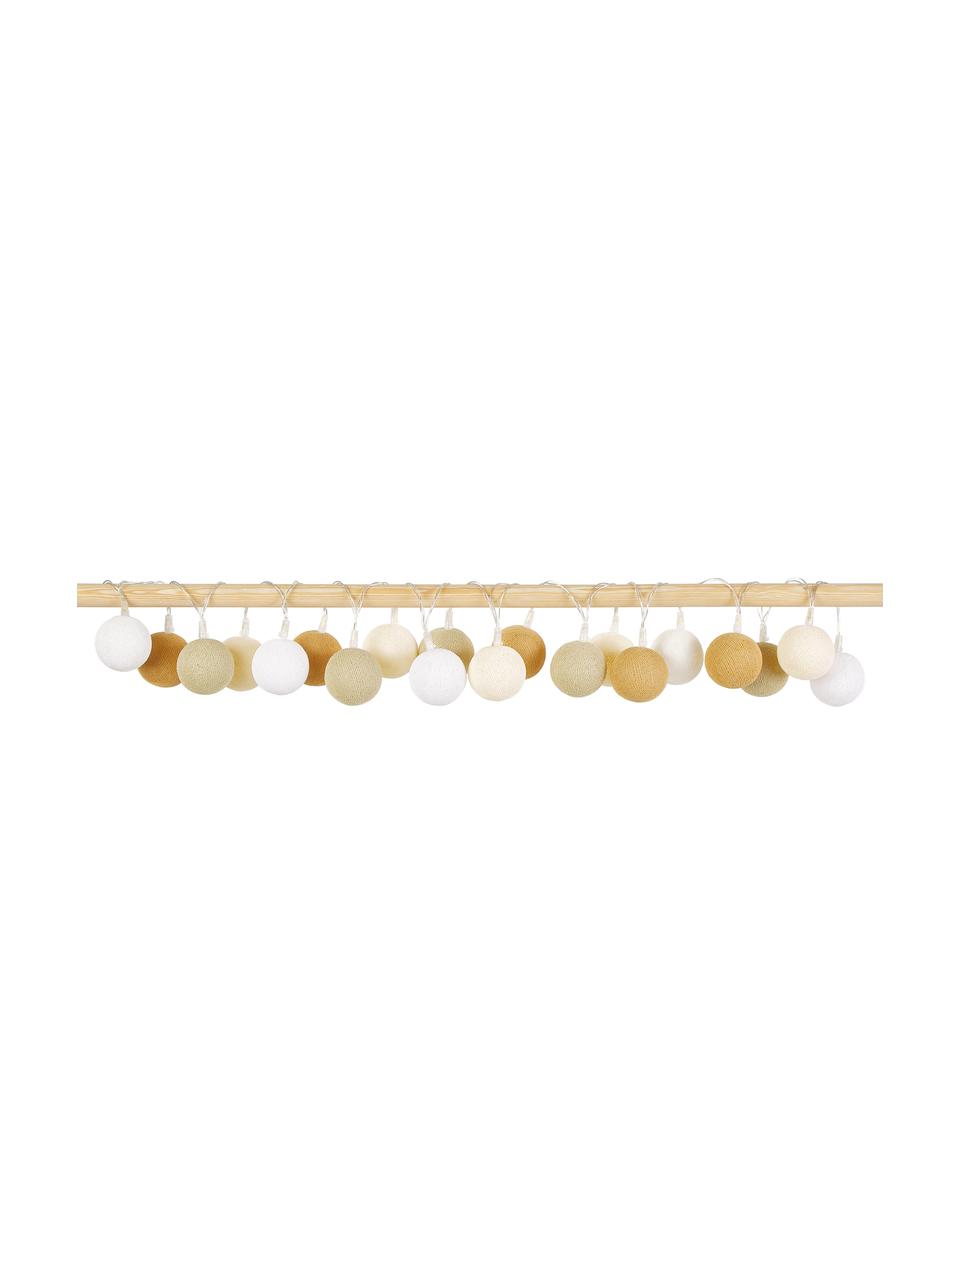 Girlanda świetlna LED Colorain, dł.  378 cm i 20 lampionów, Biały, odcienie beżowego, odcienie brązowego, D 378 cm